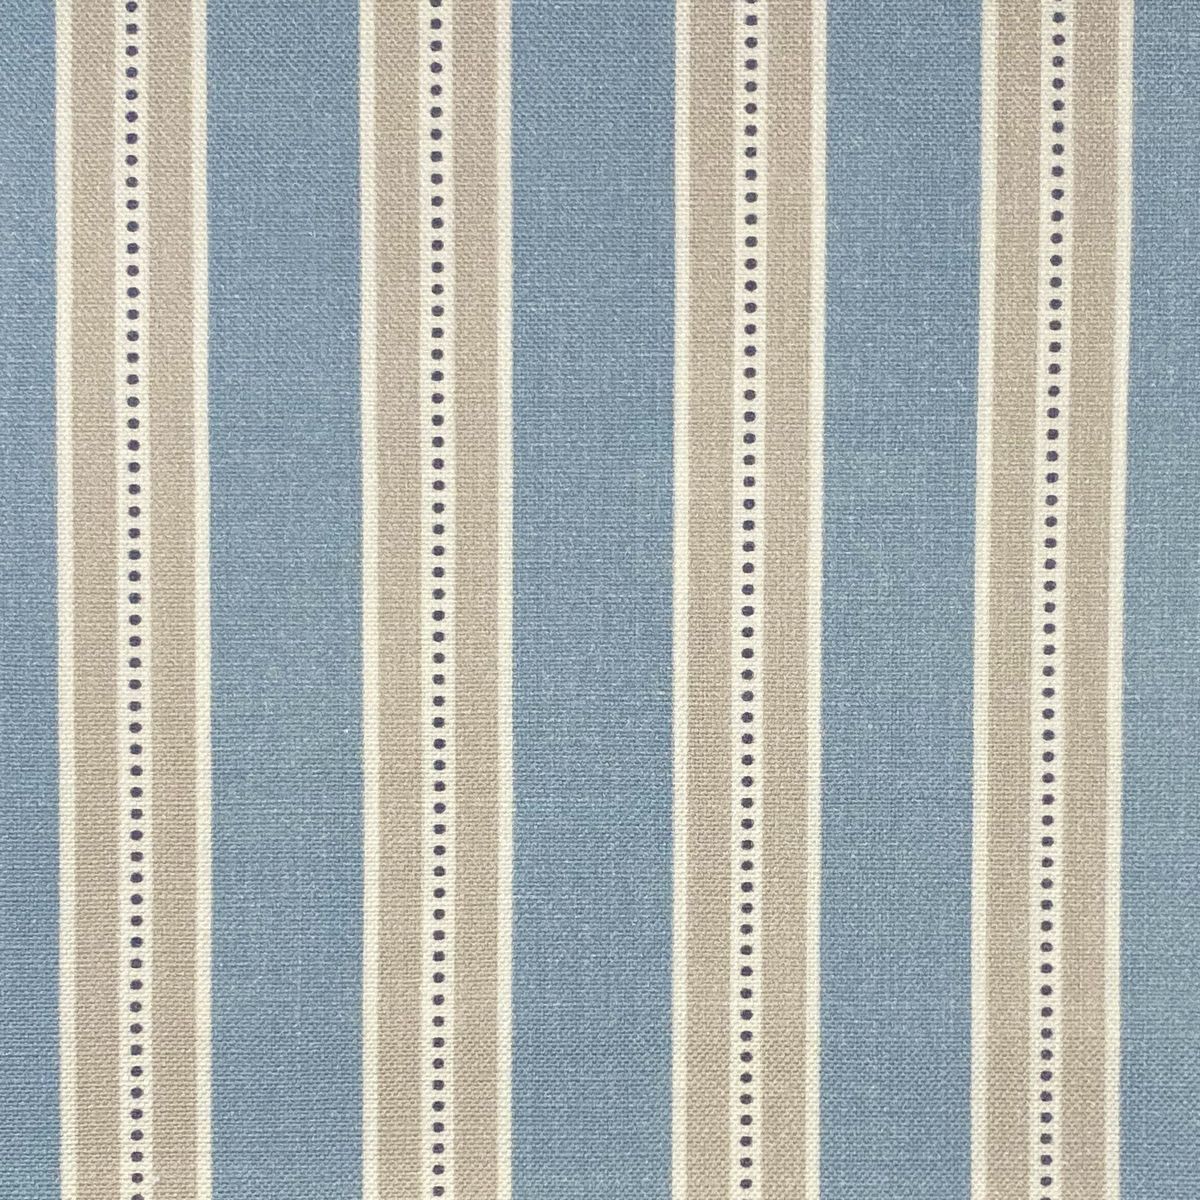 Drayton Powder Blue Fabric by Chatham Glyn